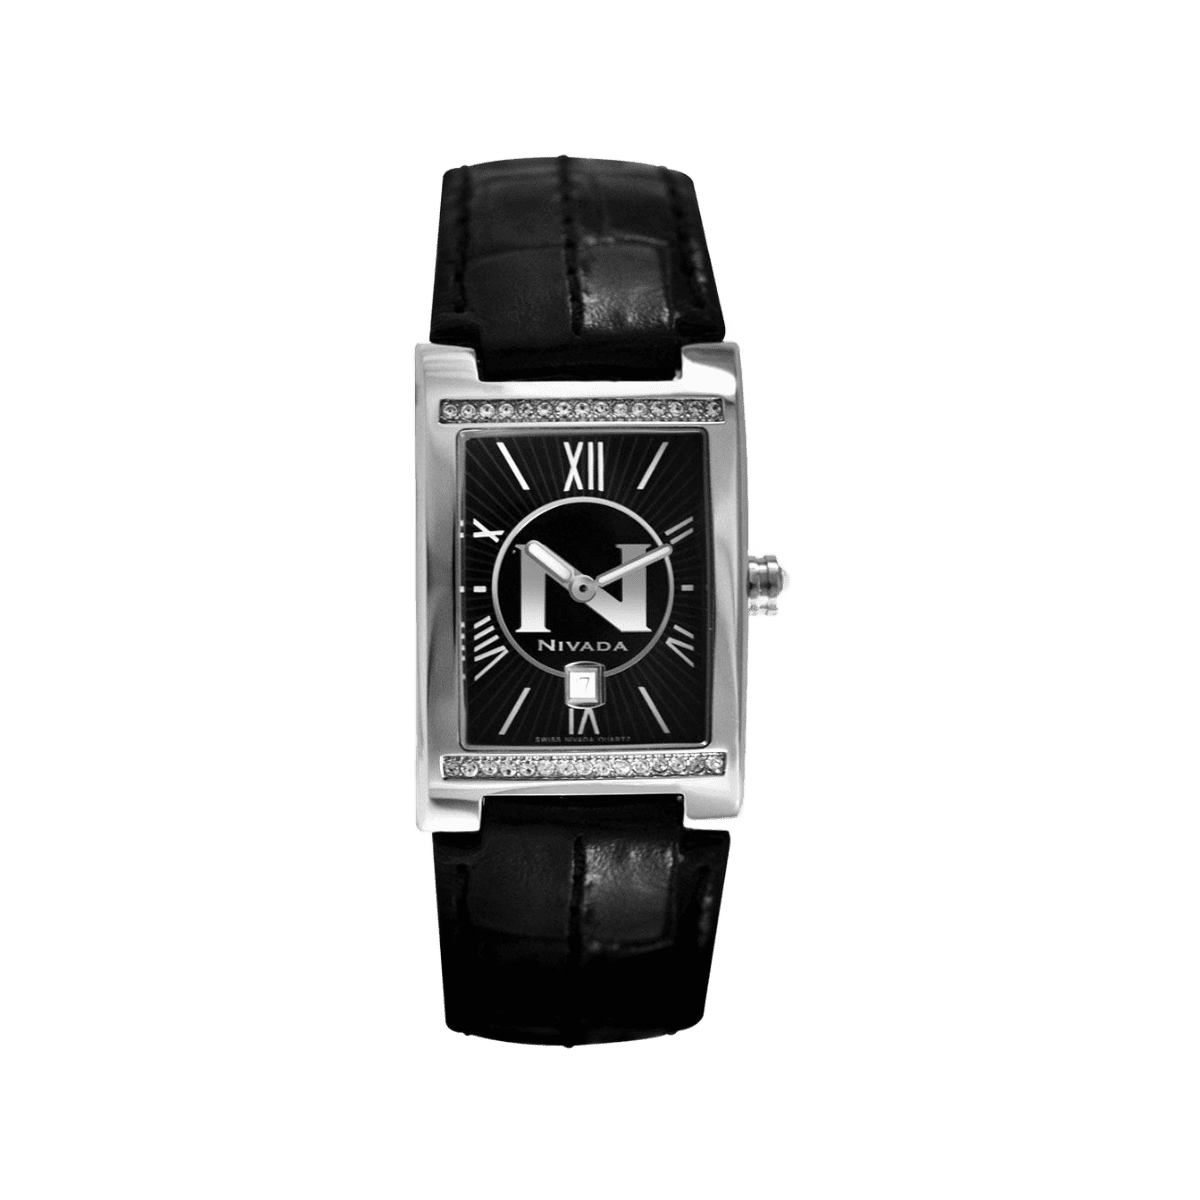 N Collection 2 Manecillas Fechador Para Dama - Altitud 384 - Reloj Nivada Swiss